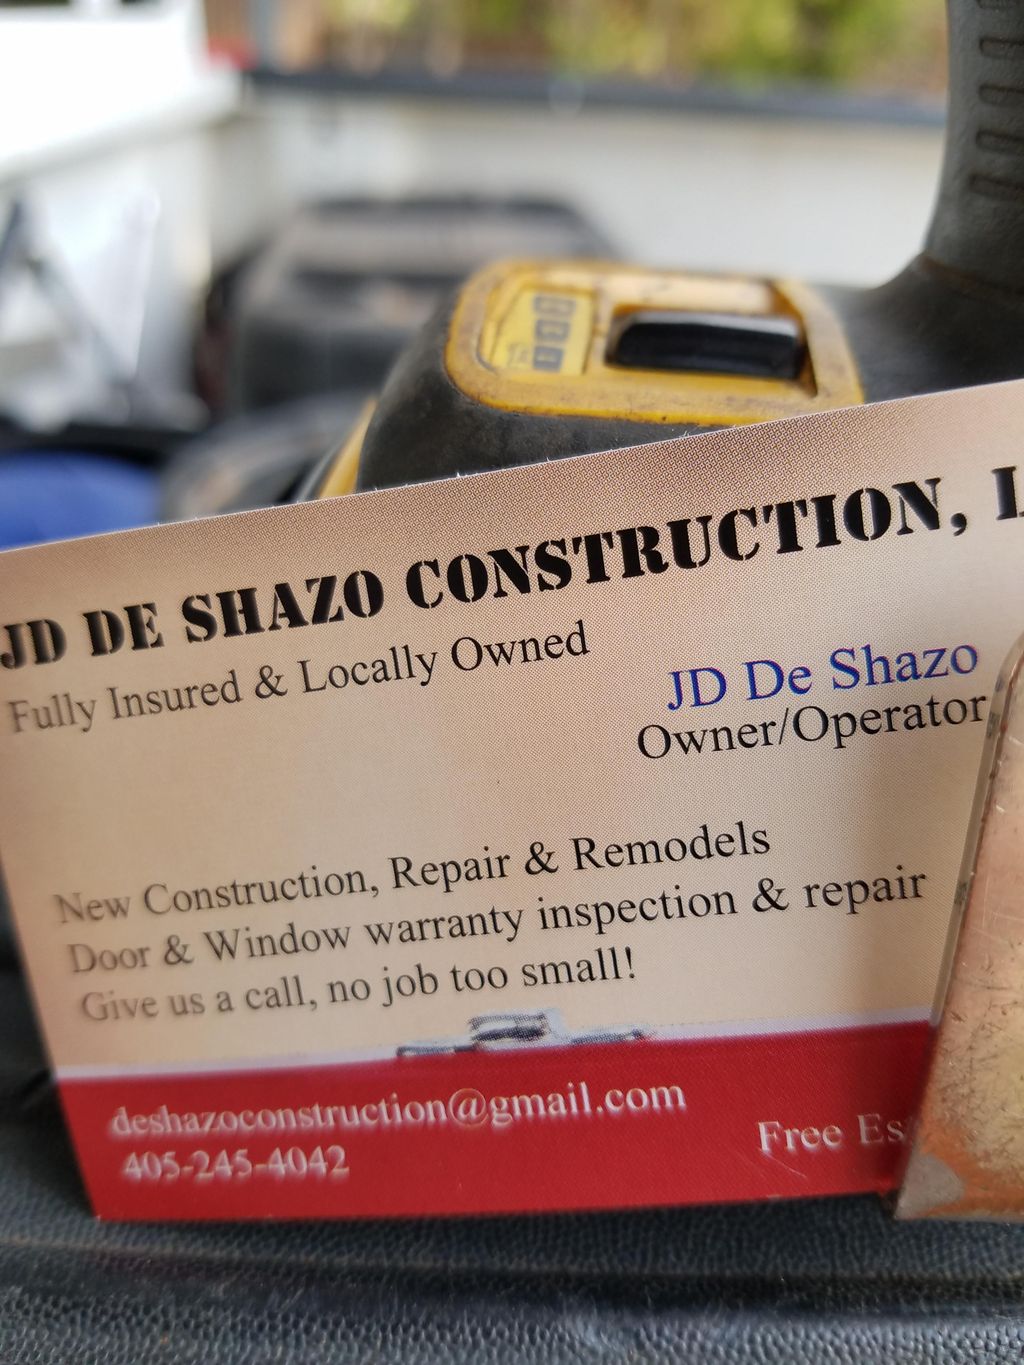 DESHAZO CONSTRUCTION LLC.